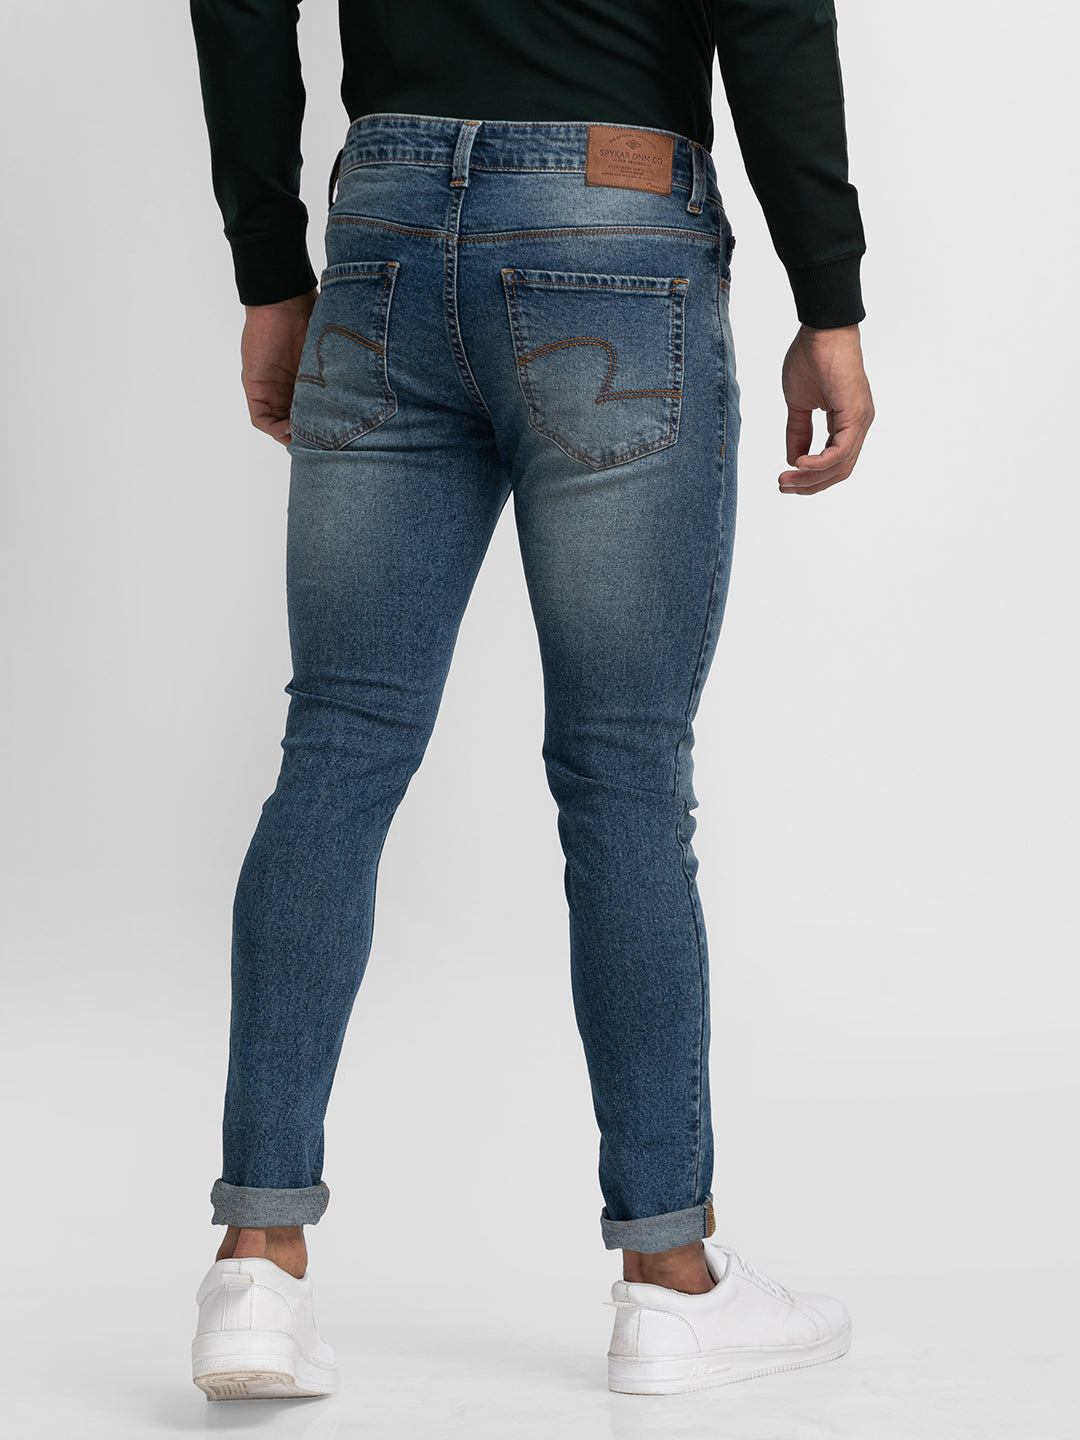 Spykar Vintage Blue Cotton Super Slim Fit Tapered Length Jeans For Men (Super Skinny)